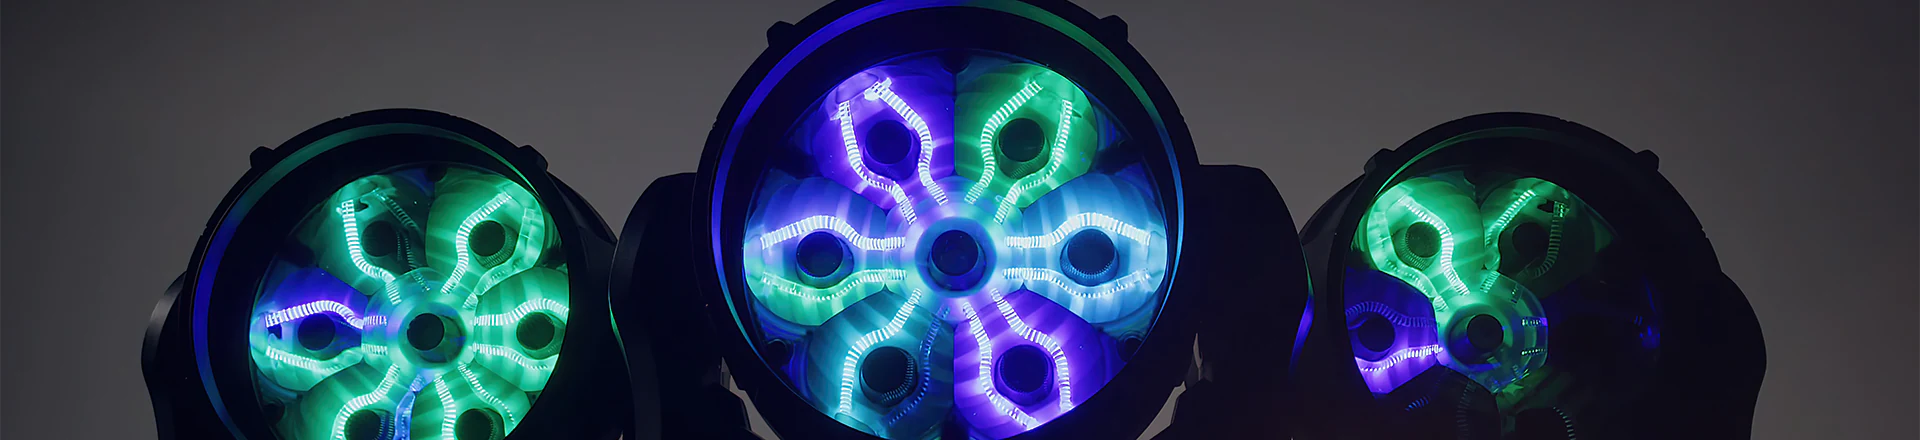 MAC Aura XIP - Oświetlenie LED zewnętrzne i teatralne w jednym. Game changer? 